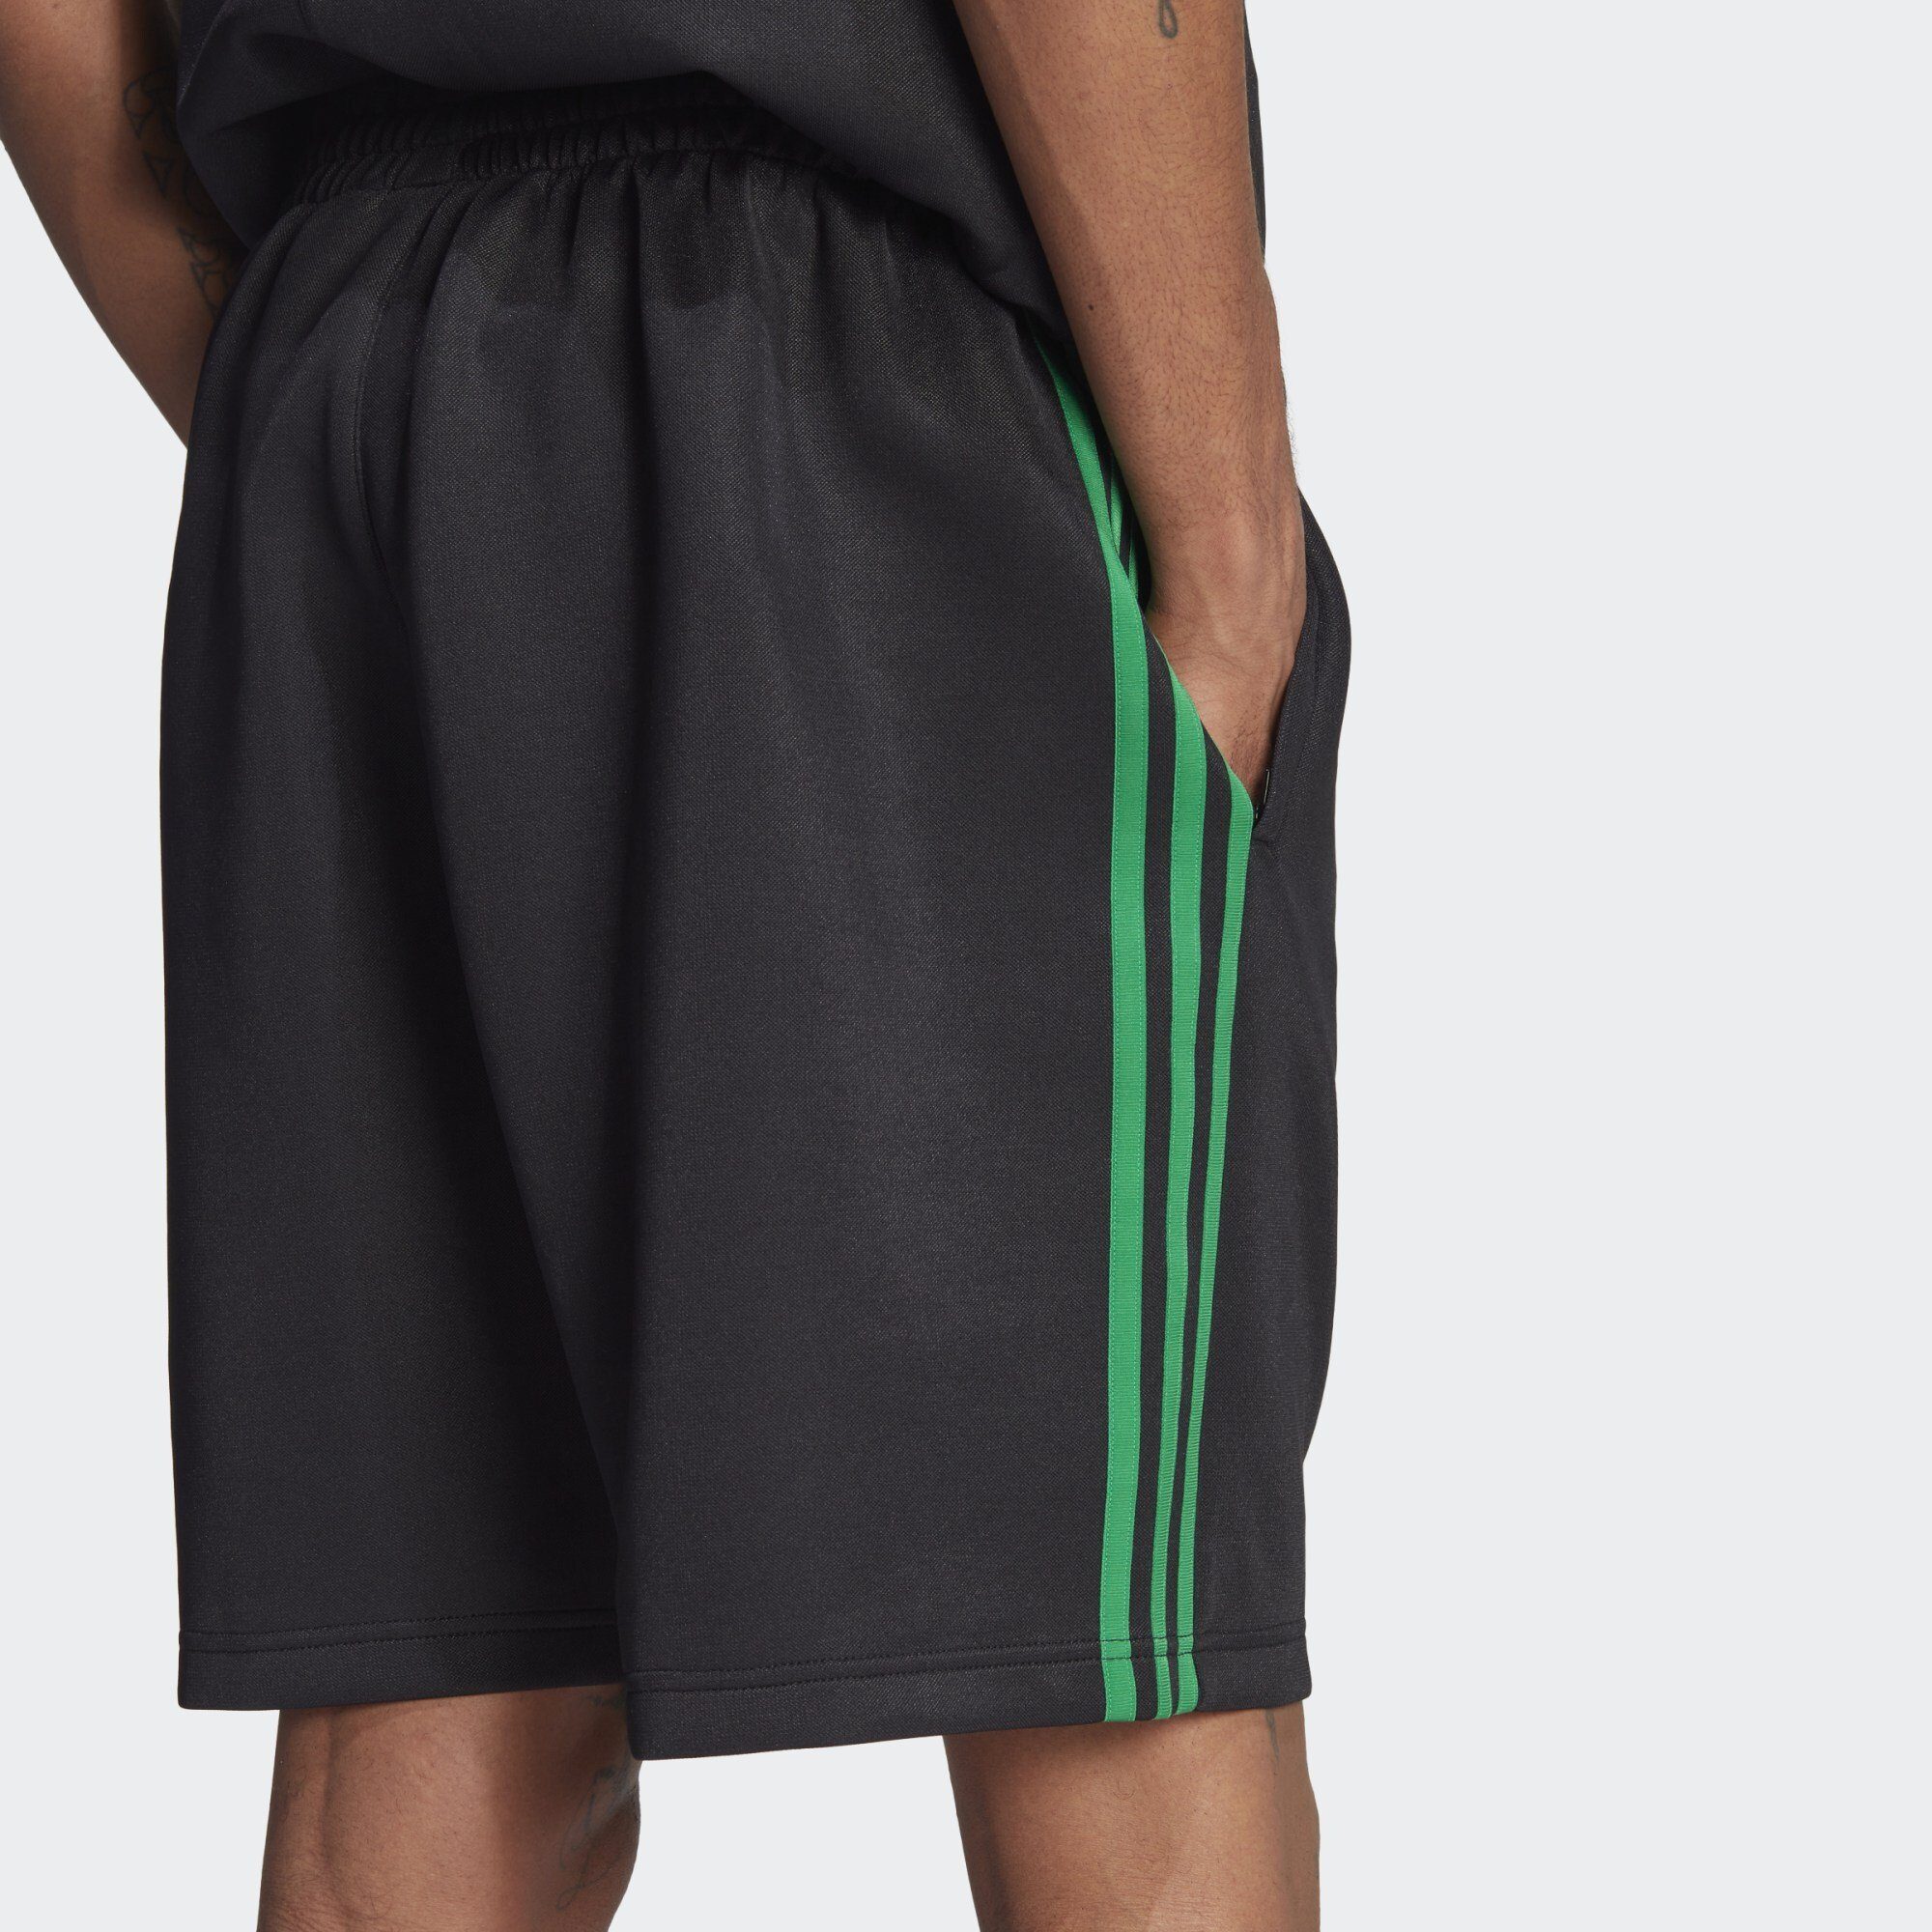 adidas Shorts ADICOLOR Originals Green SHORTS Black / CLASSICS+